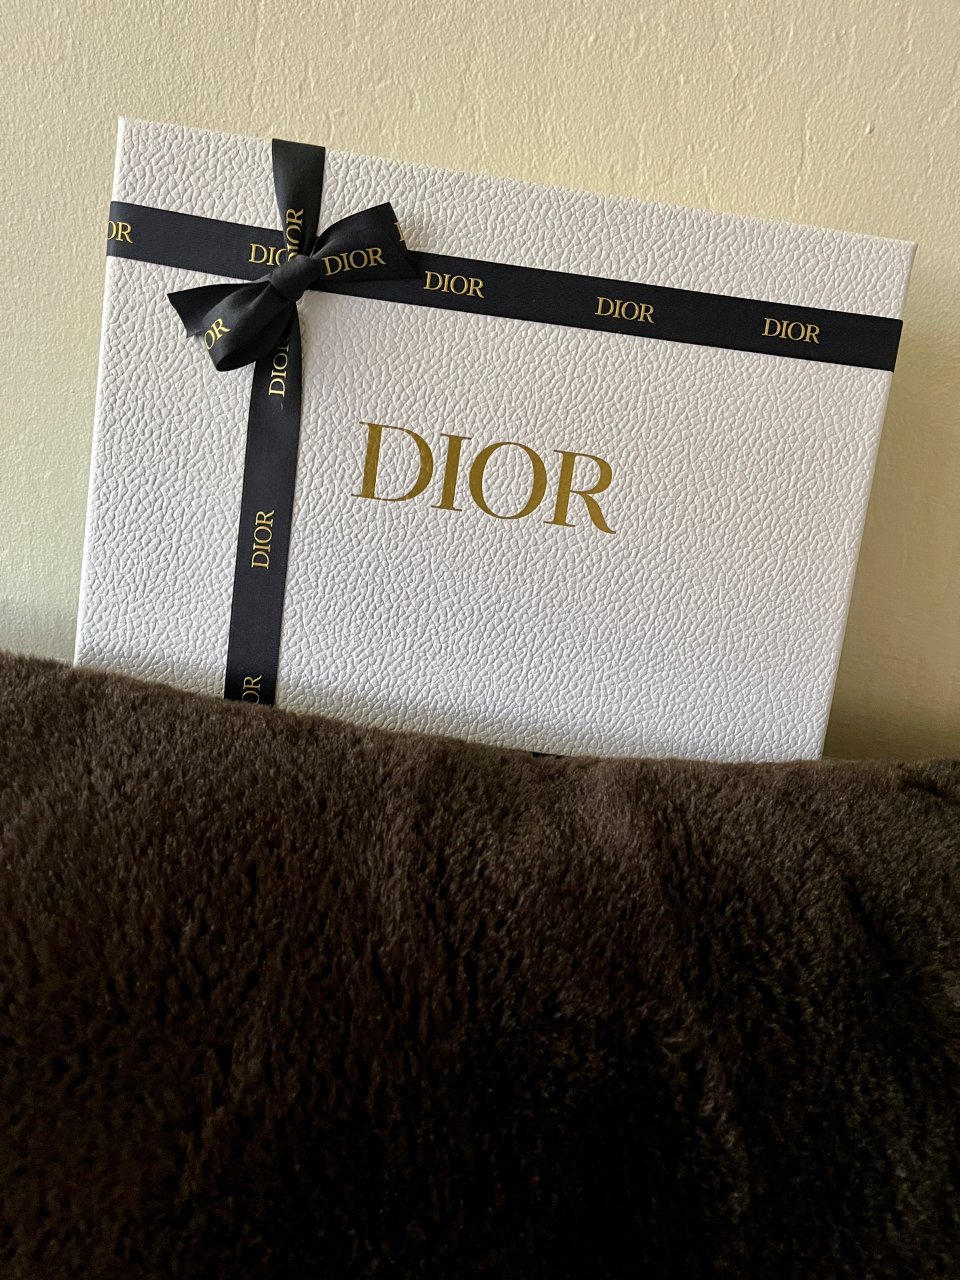 天啊Dior的口红包也太好看了吧...